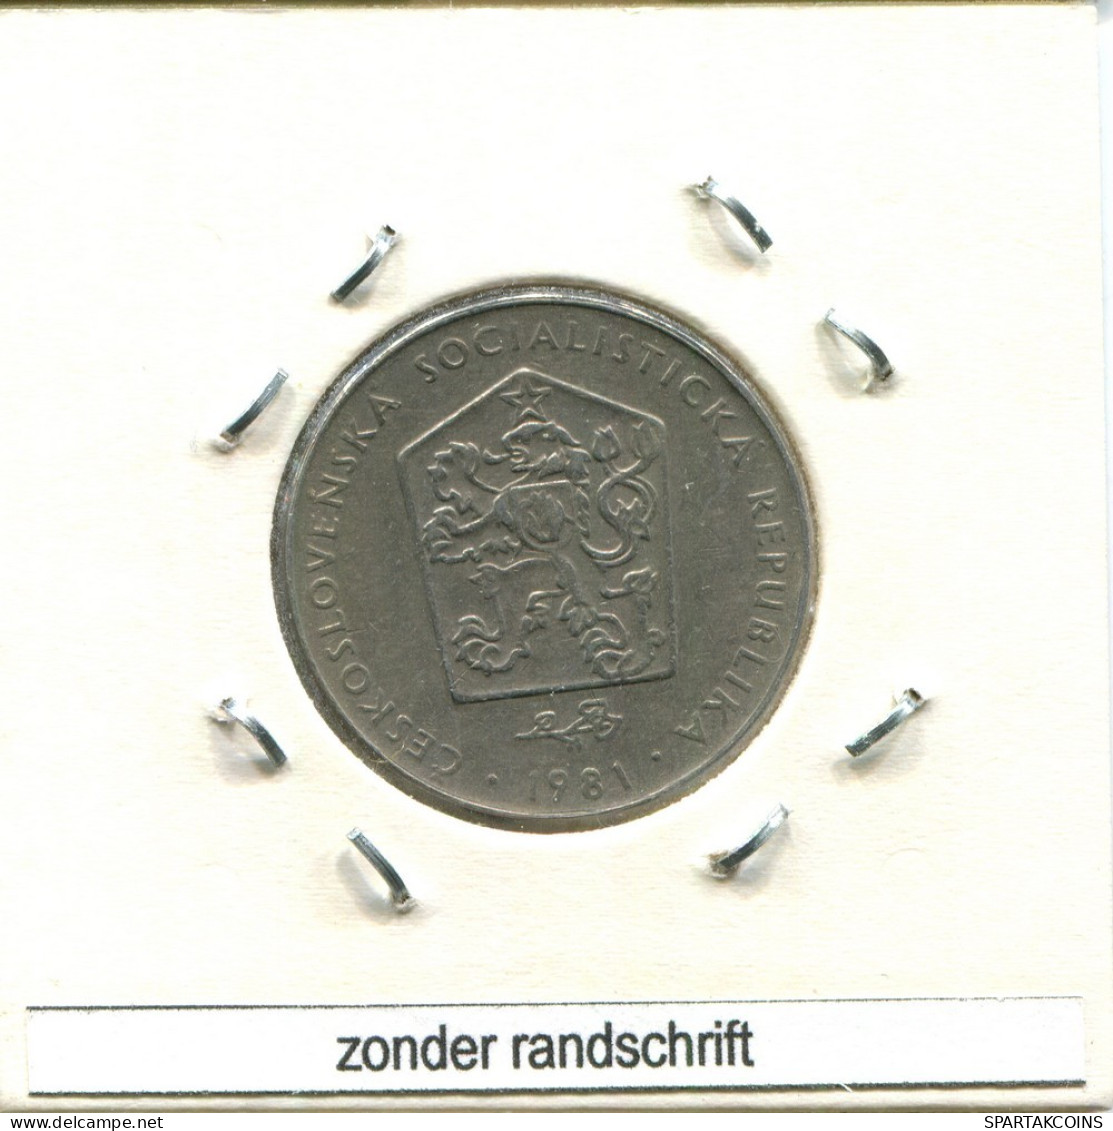 2 KORUN 1981 TSCHECHOSLOWAKEI CZECHOSLOWAKEI SLOVAKIA Münze #AS529.D.A - Czechoslovakia